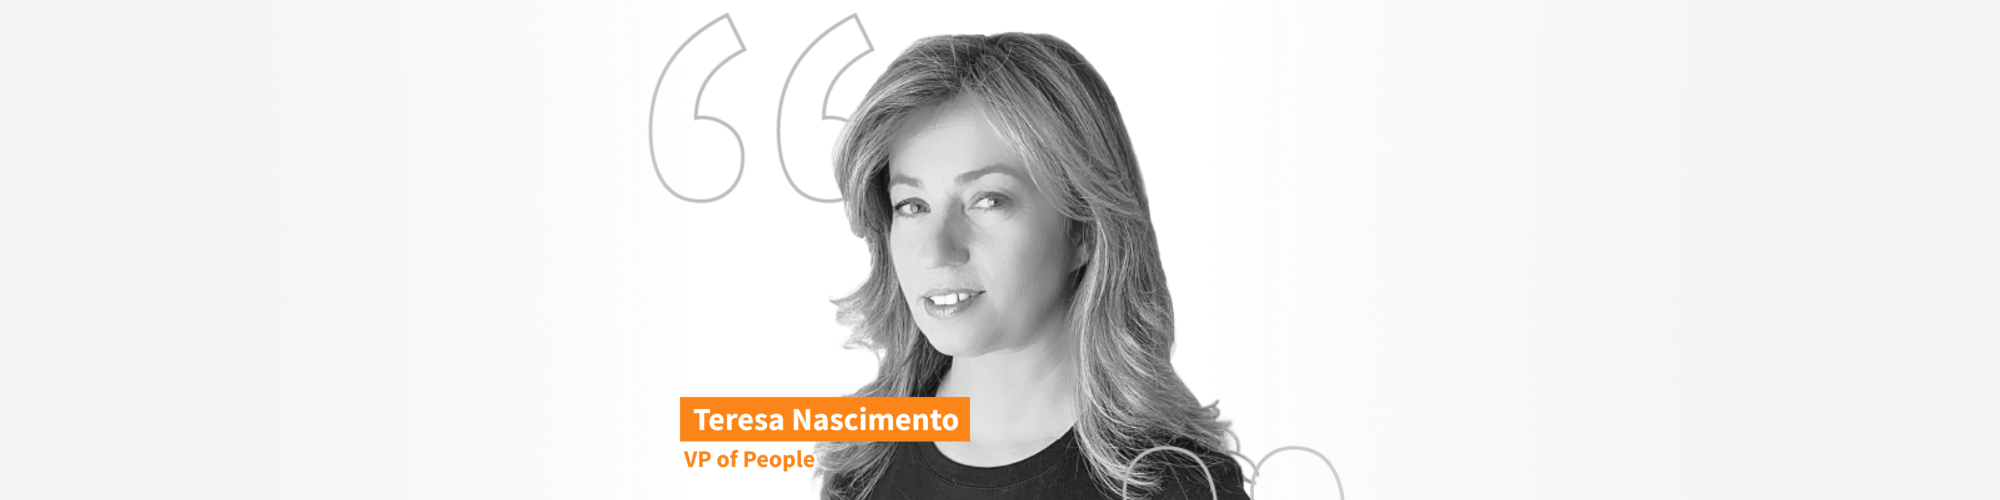 Teresa NAscimento VP of People